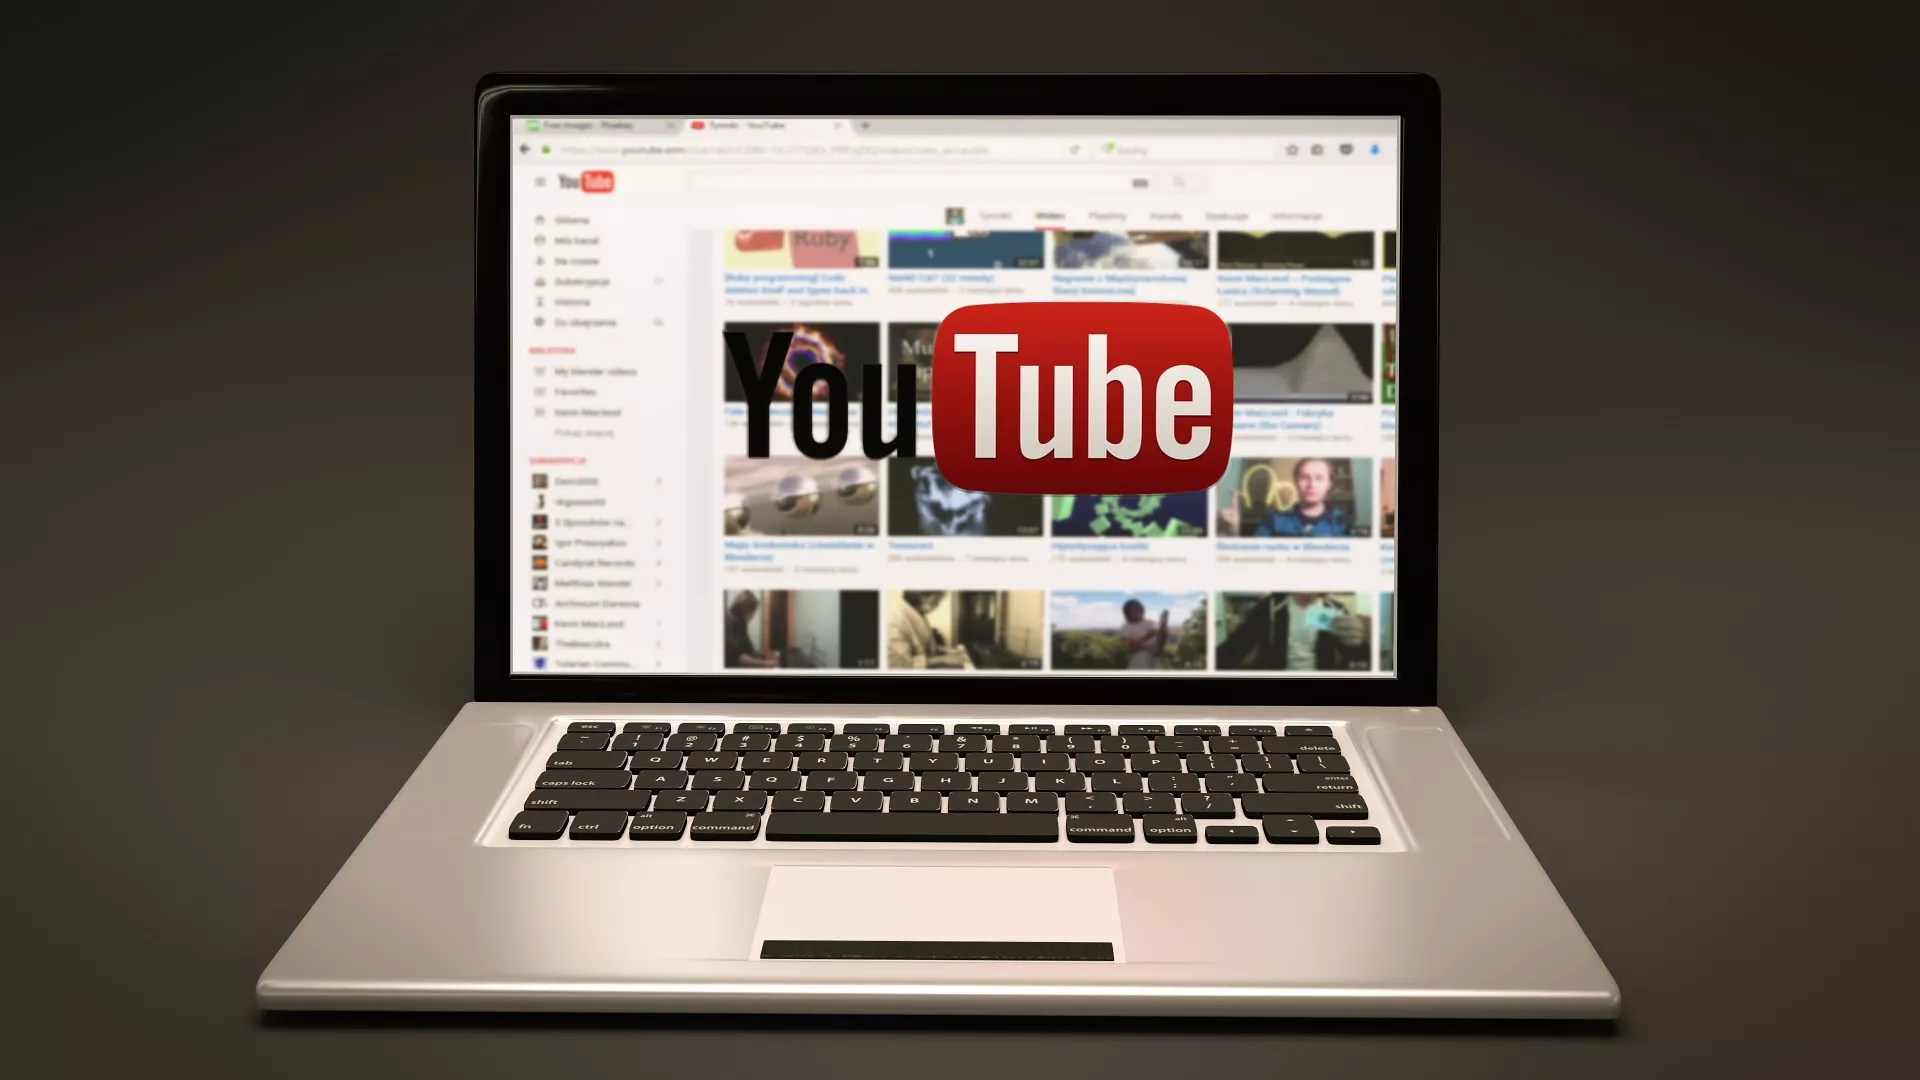 Ripple dient rechtszaak in tegen YouTube: ‘genoeg is genoeg’